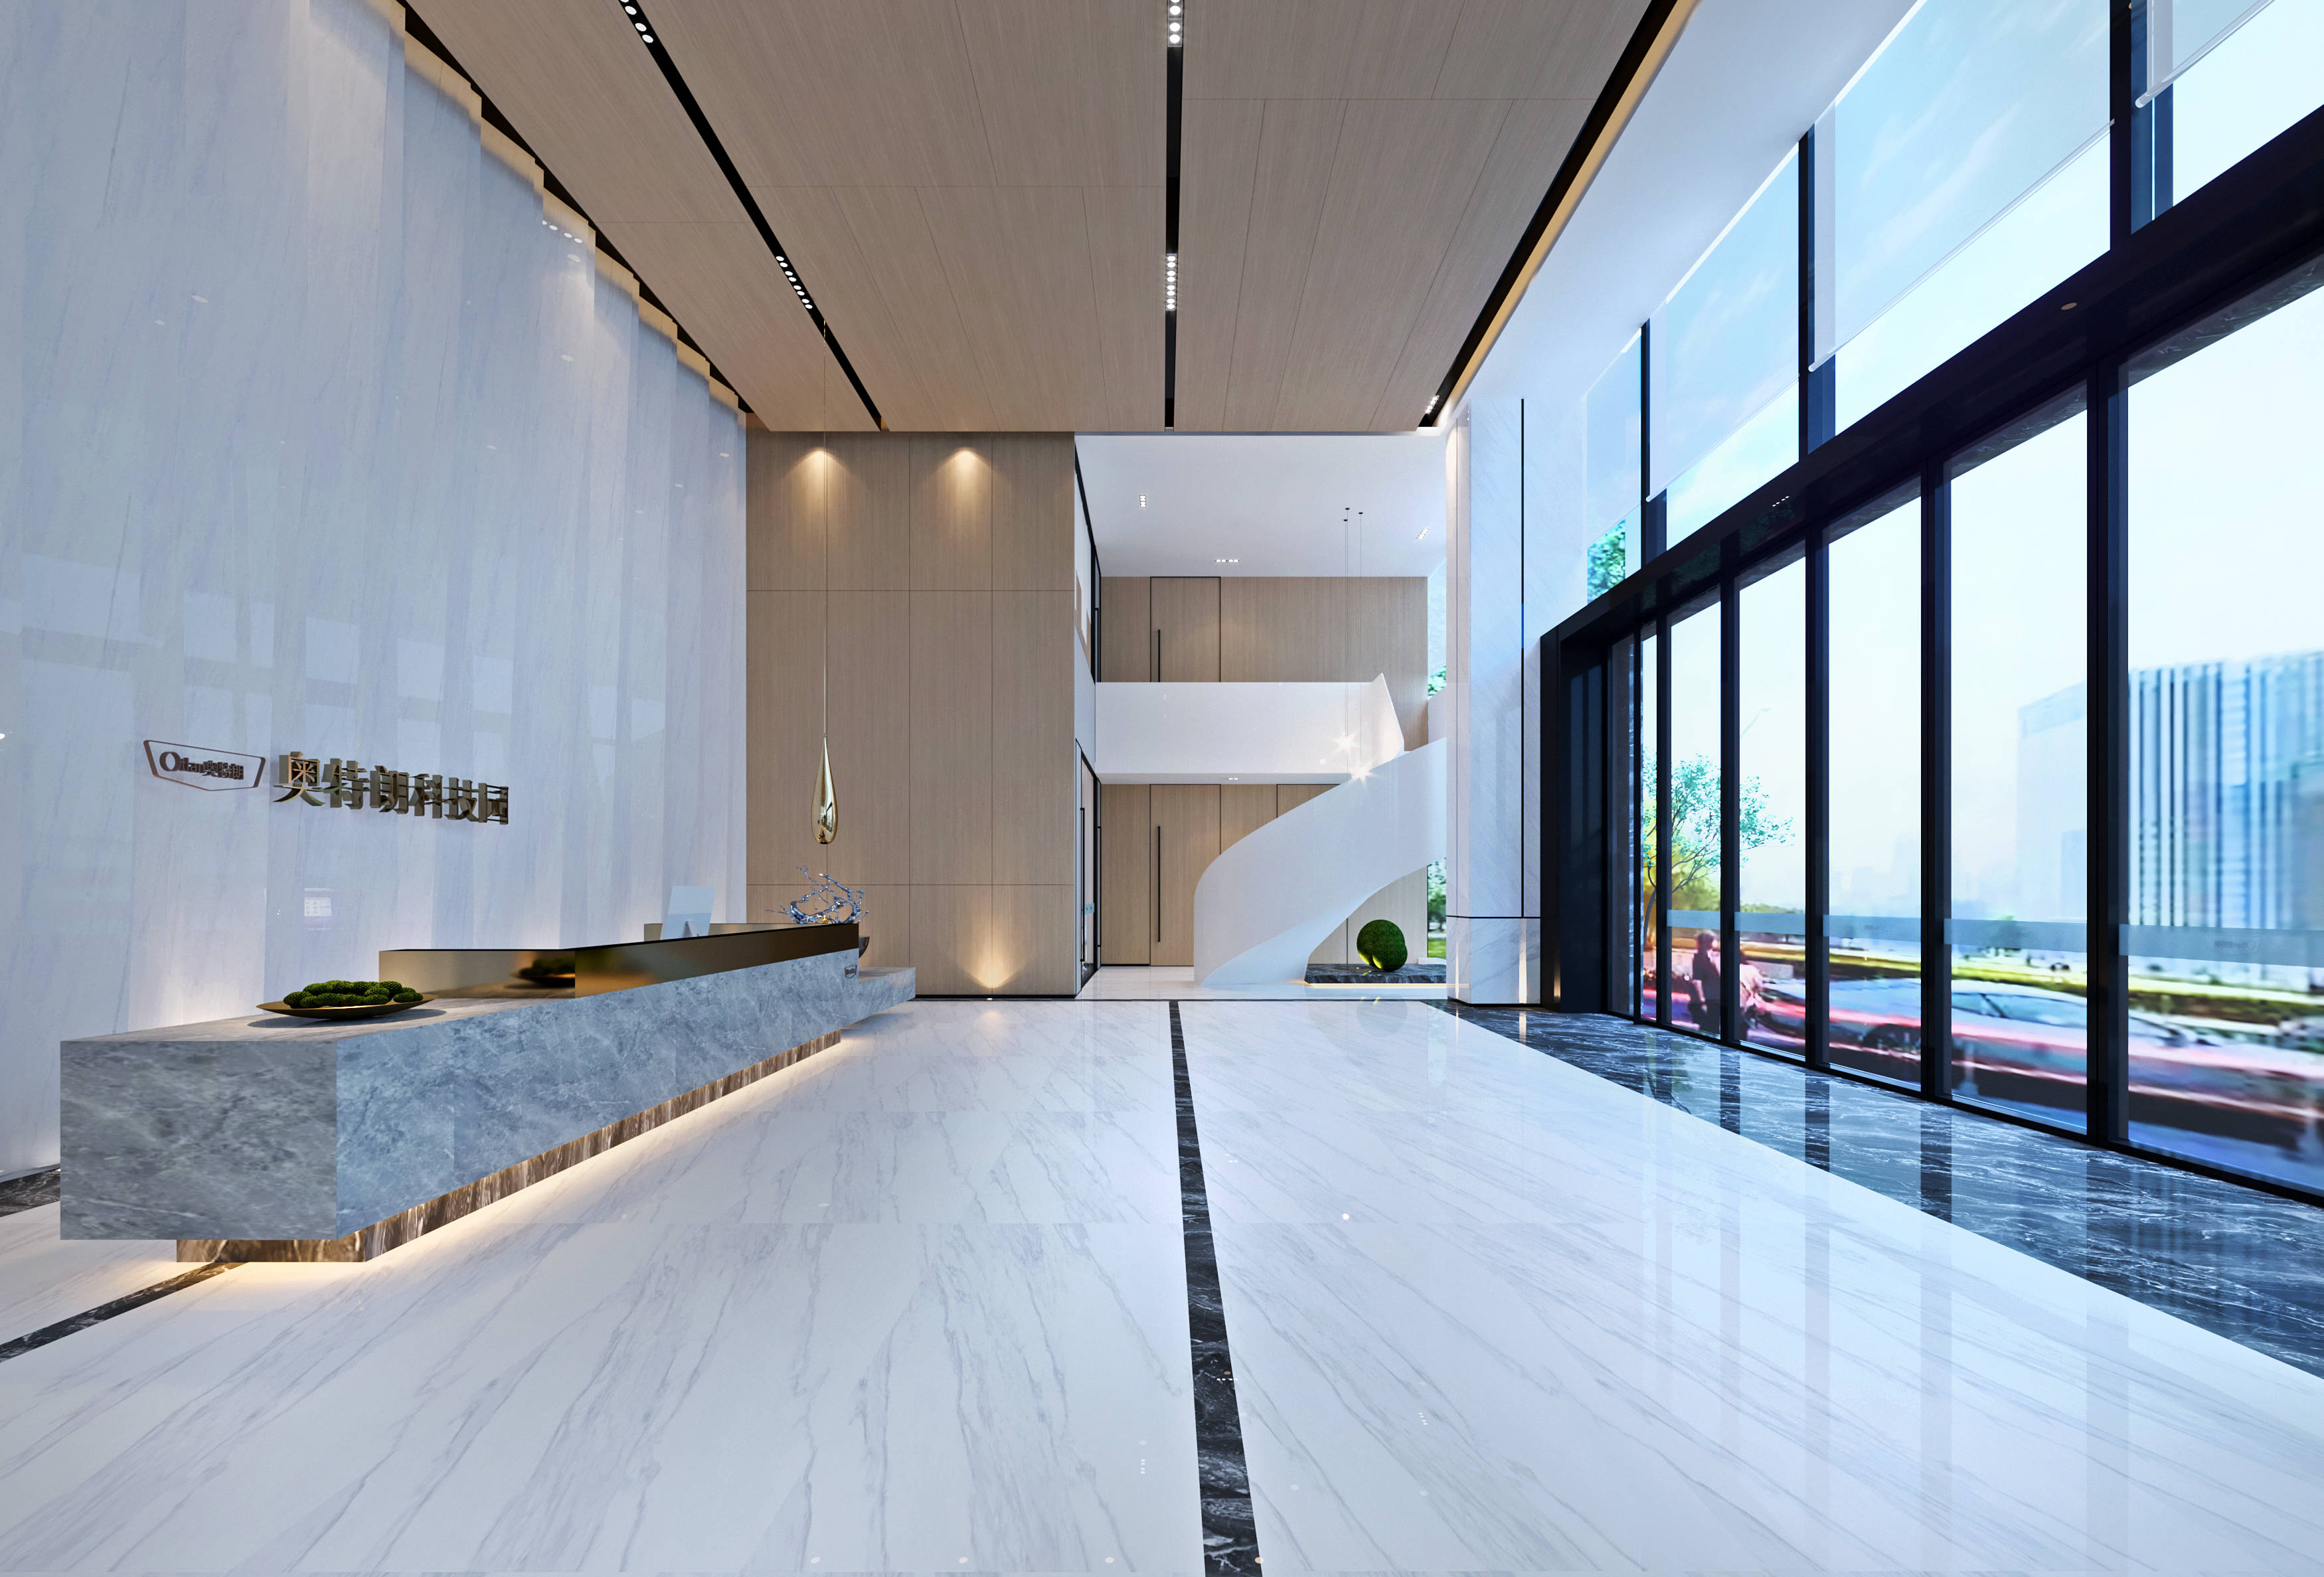 奥特朗科技园拥有豪华7m挑高入户大堂,面积达300㎡,采用豪华精装,视觉